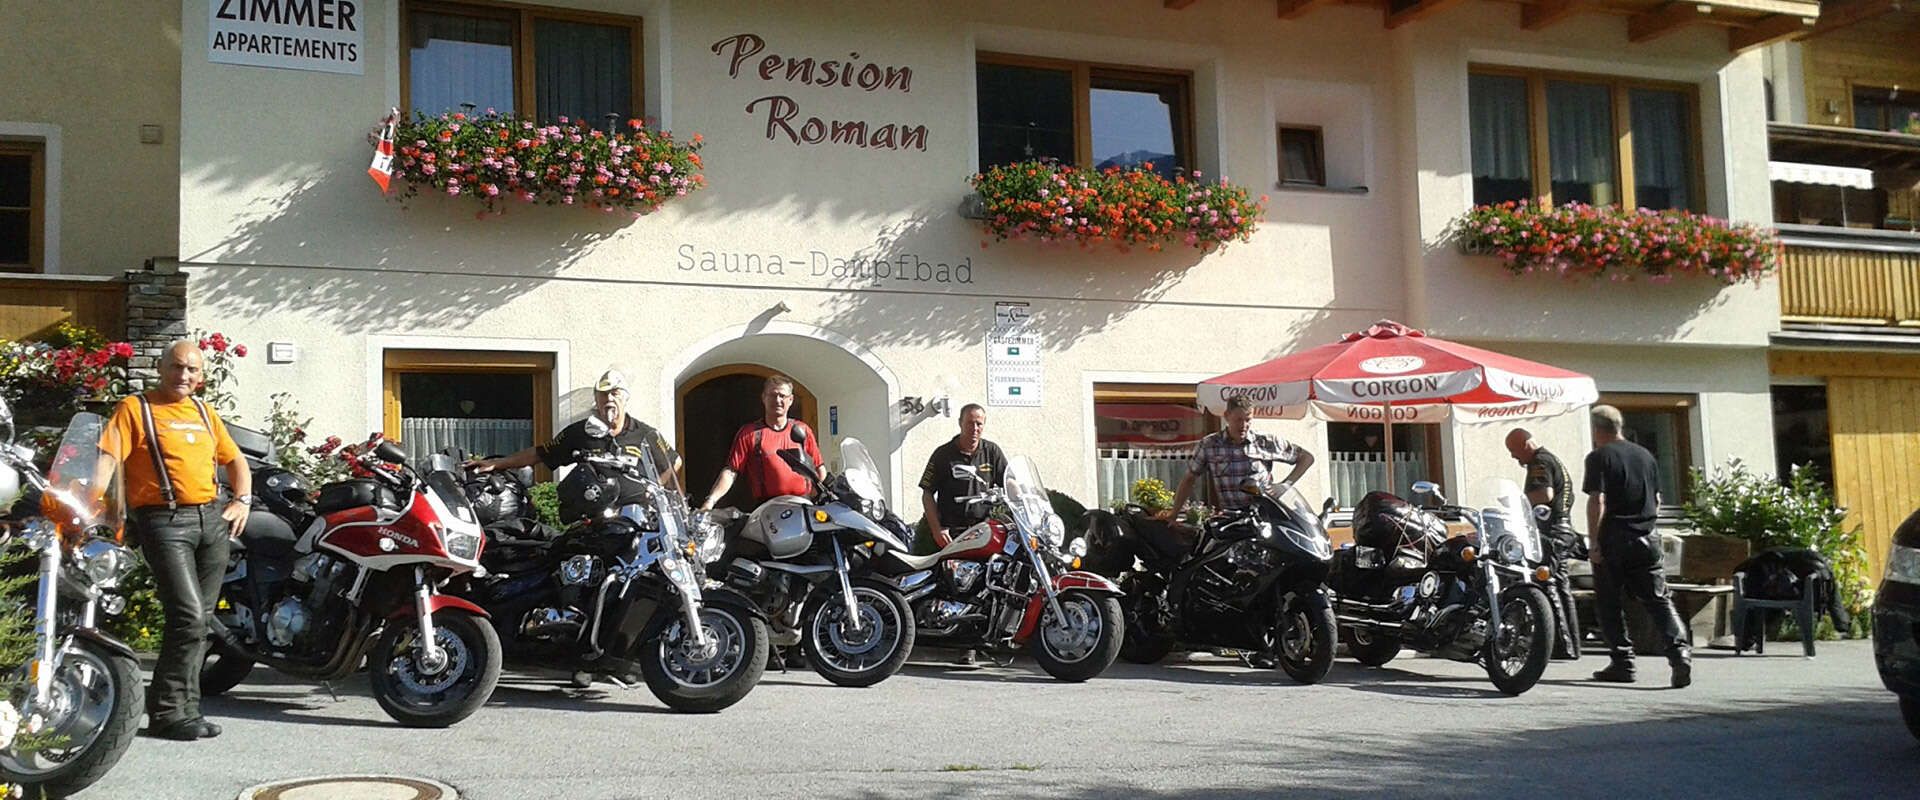 Pension Roman als bikerfreundliche Unterkunft in Tirol am Arlberg